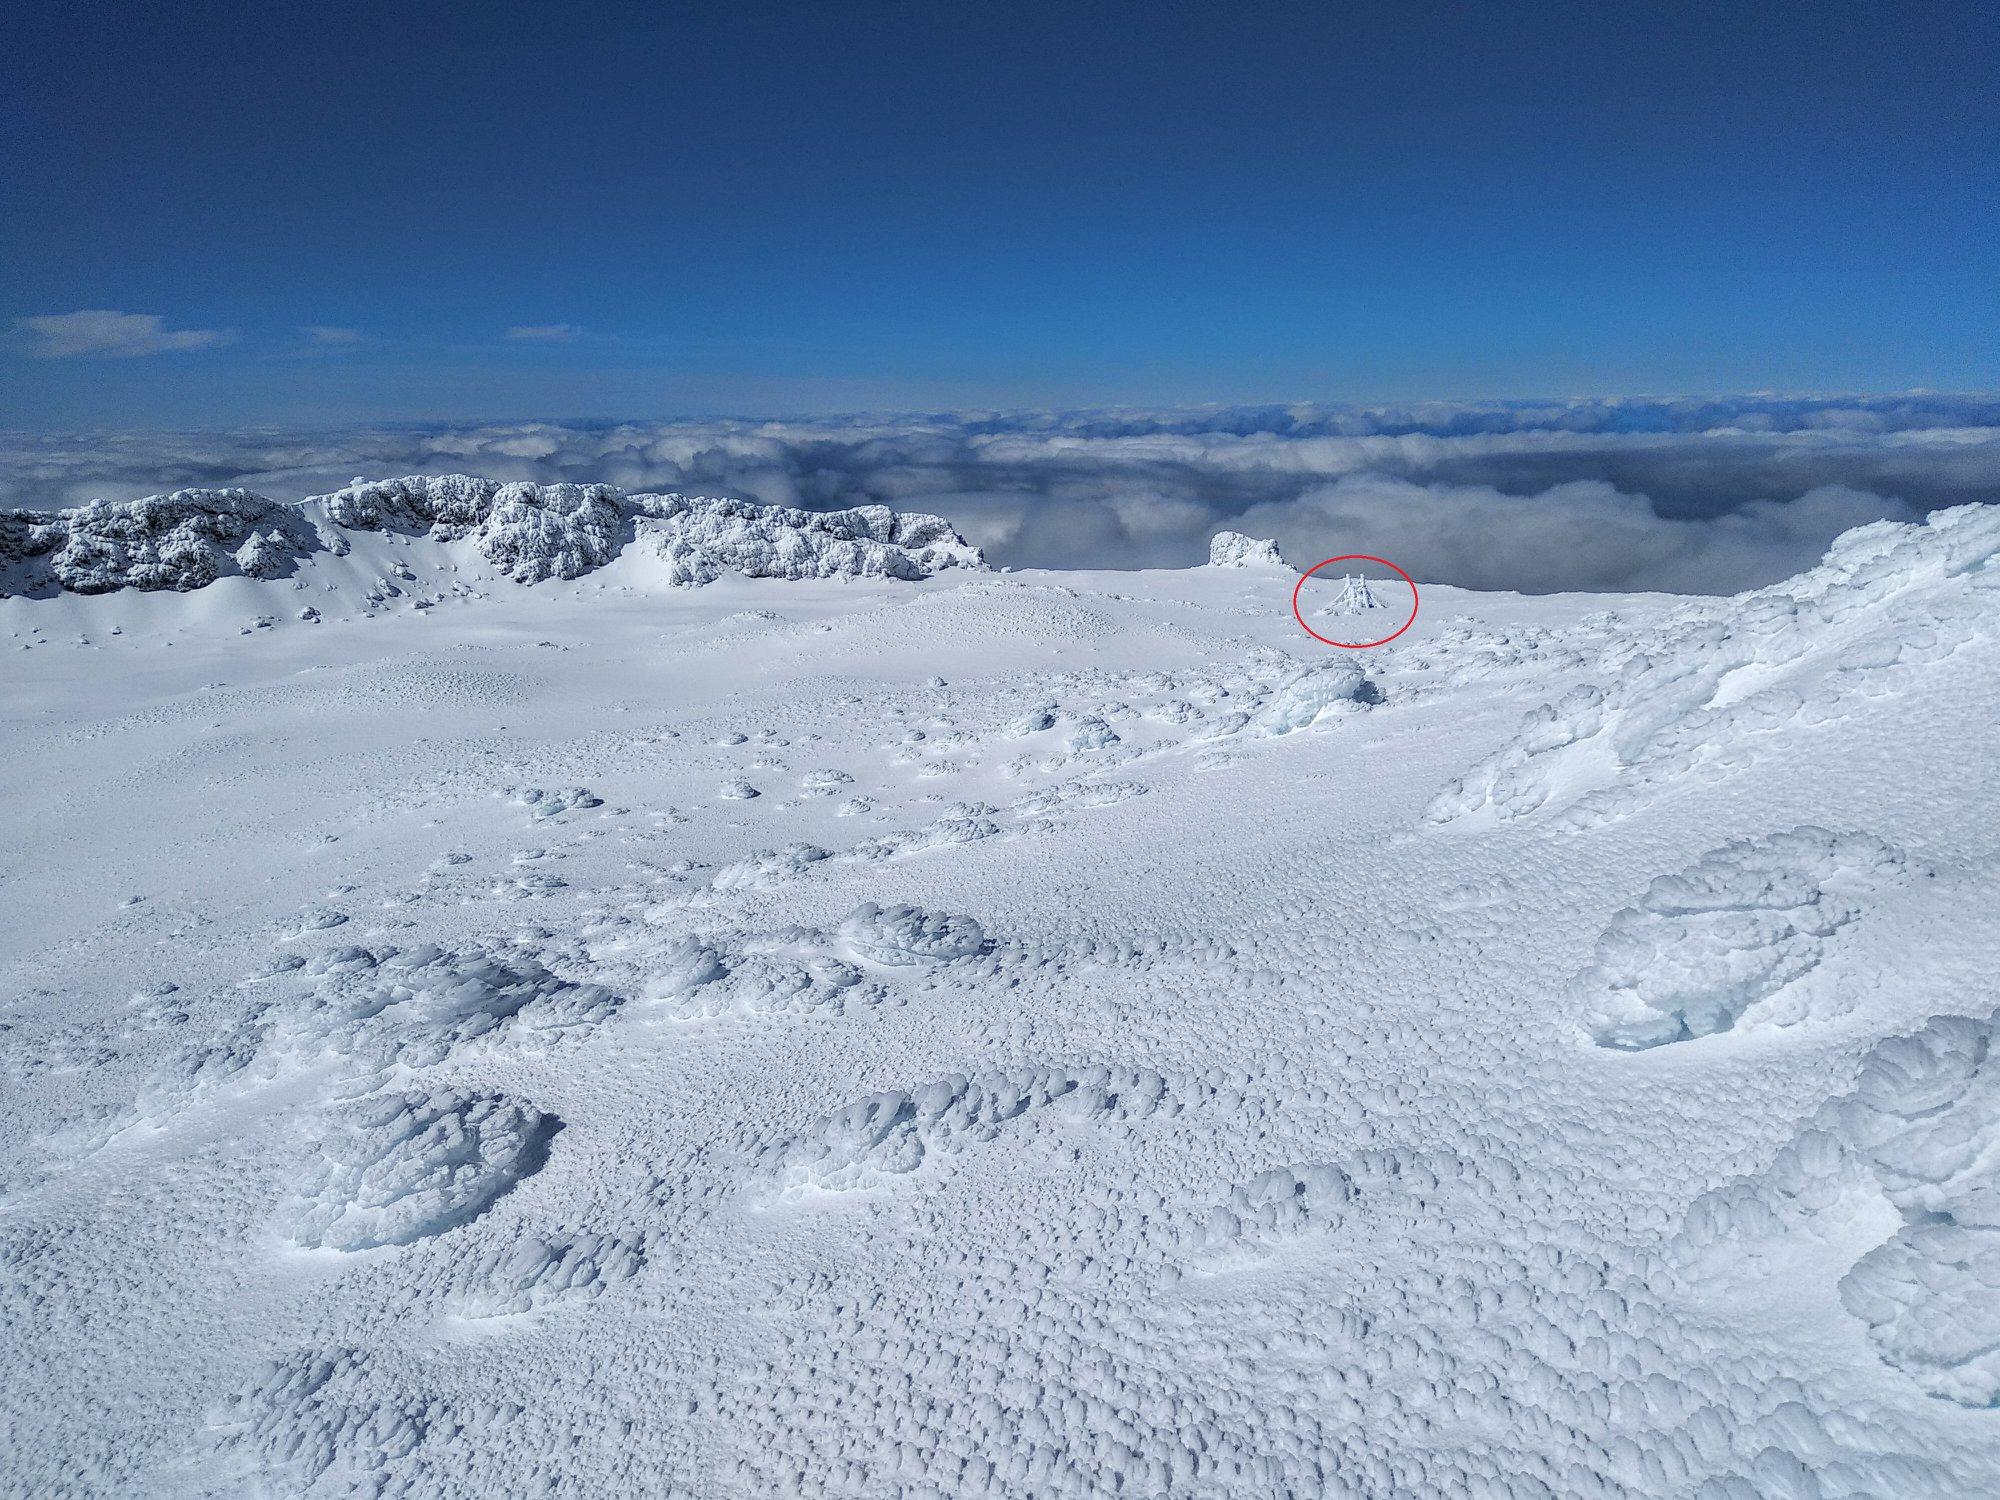 Neve Montanha do Pico - Fev 2019 - (C) Rui Goulart